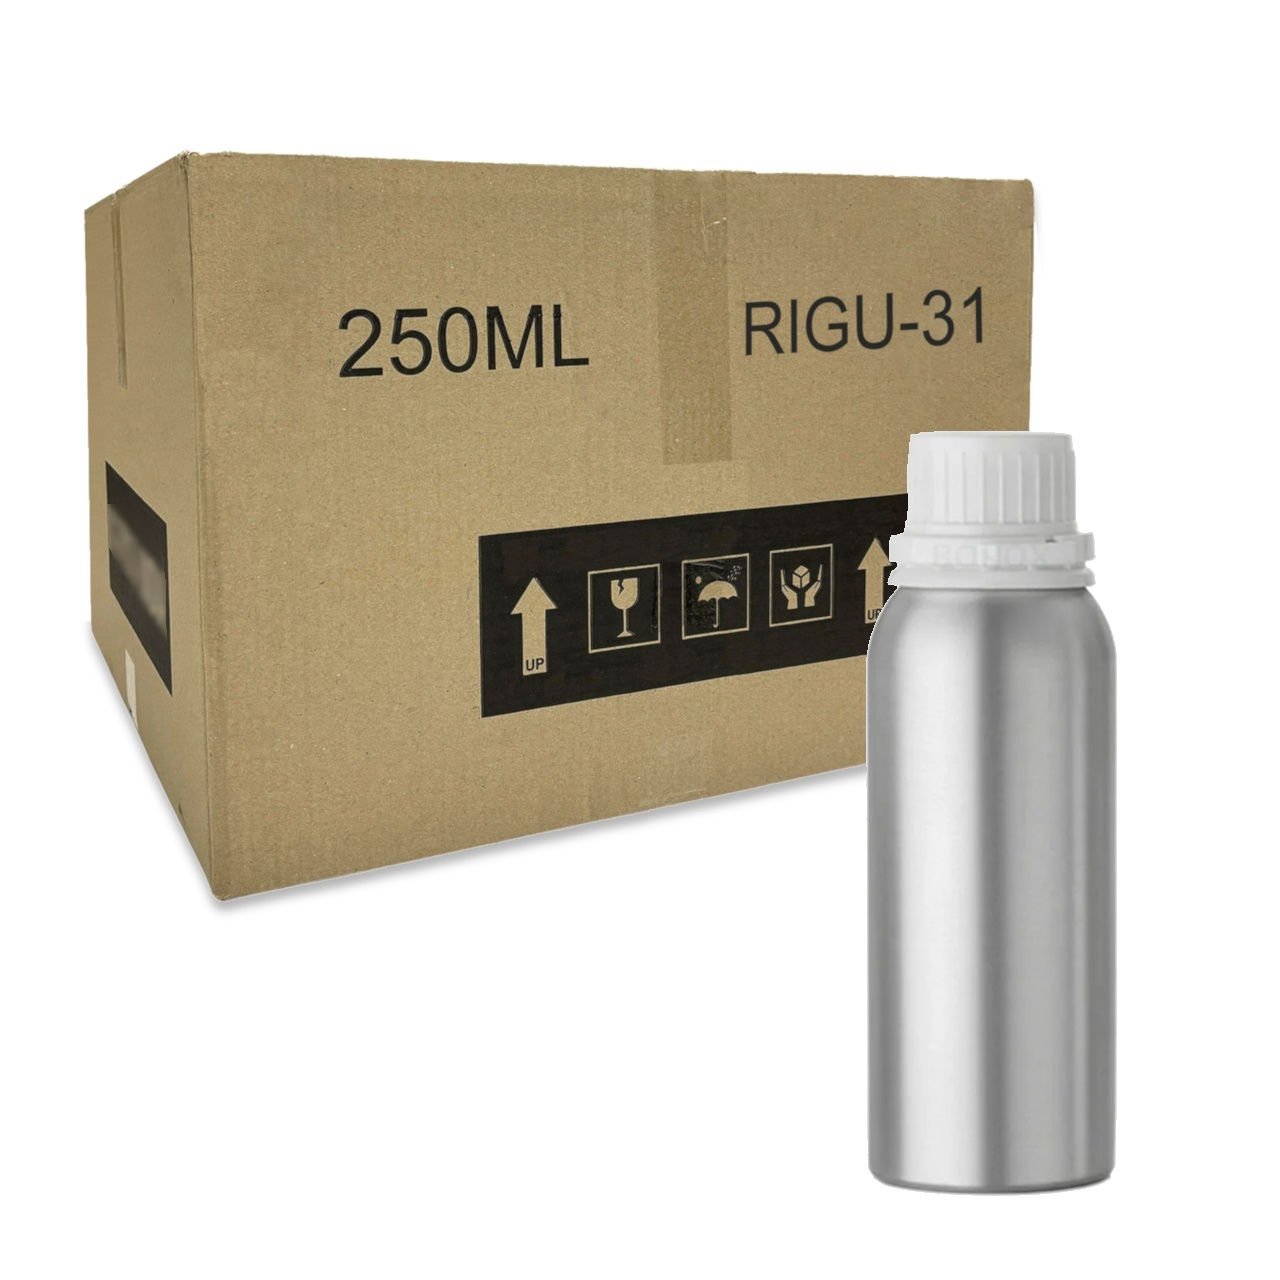 RIGU-31 Alüminyum Şişe 250 ml - Tıpalı ve Kapaklı Şişe Metal - 200 Adet-Koli Toptan